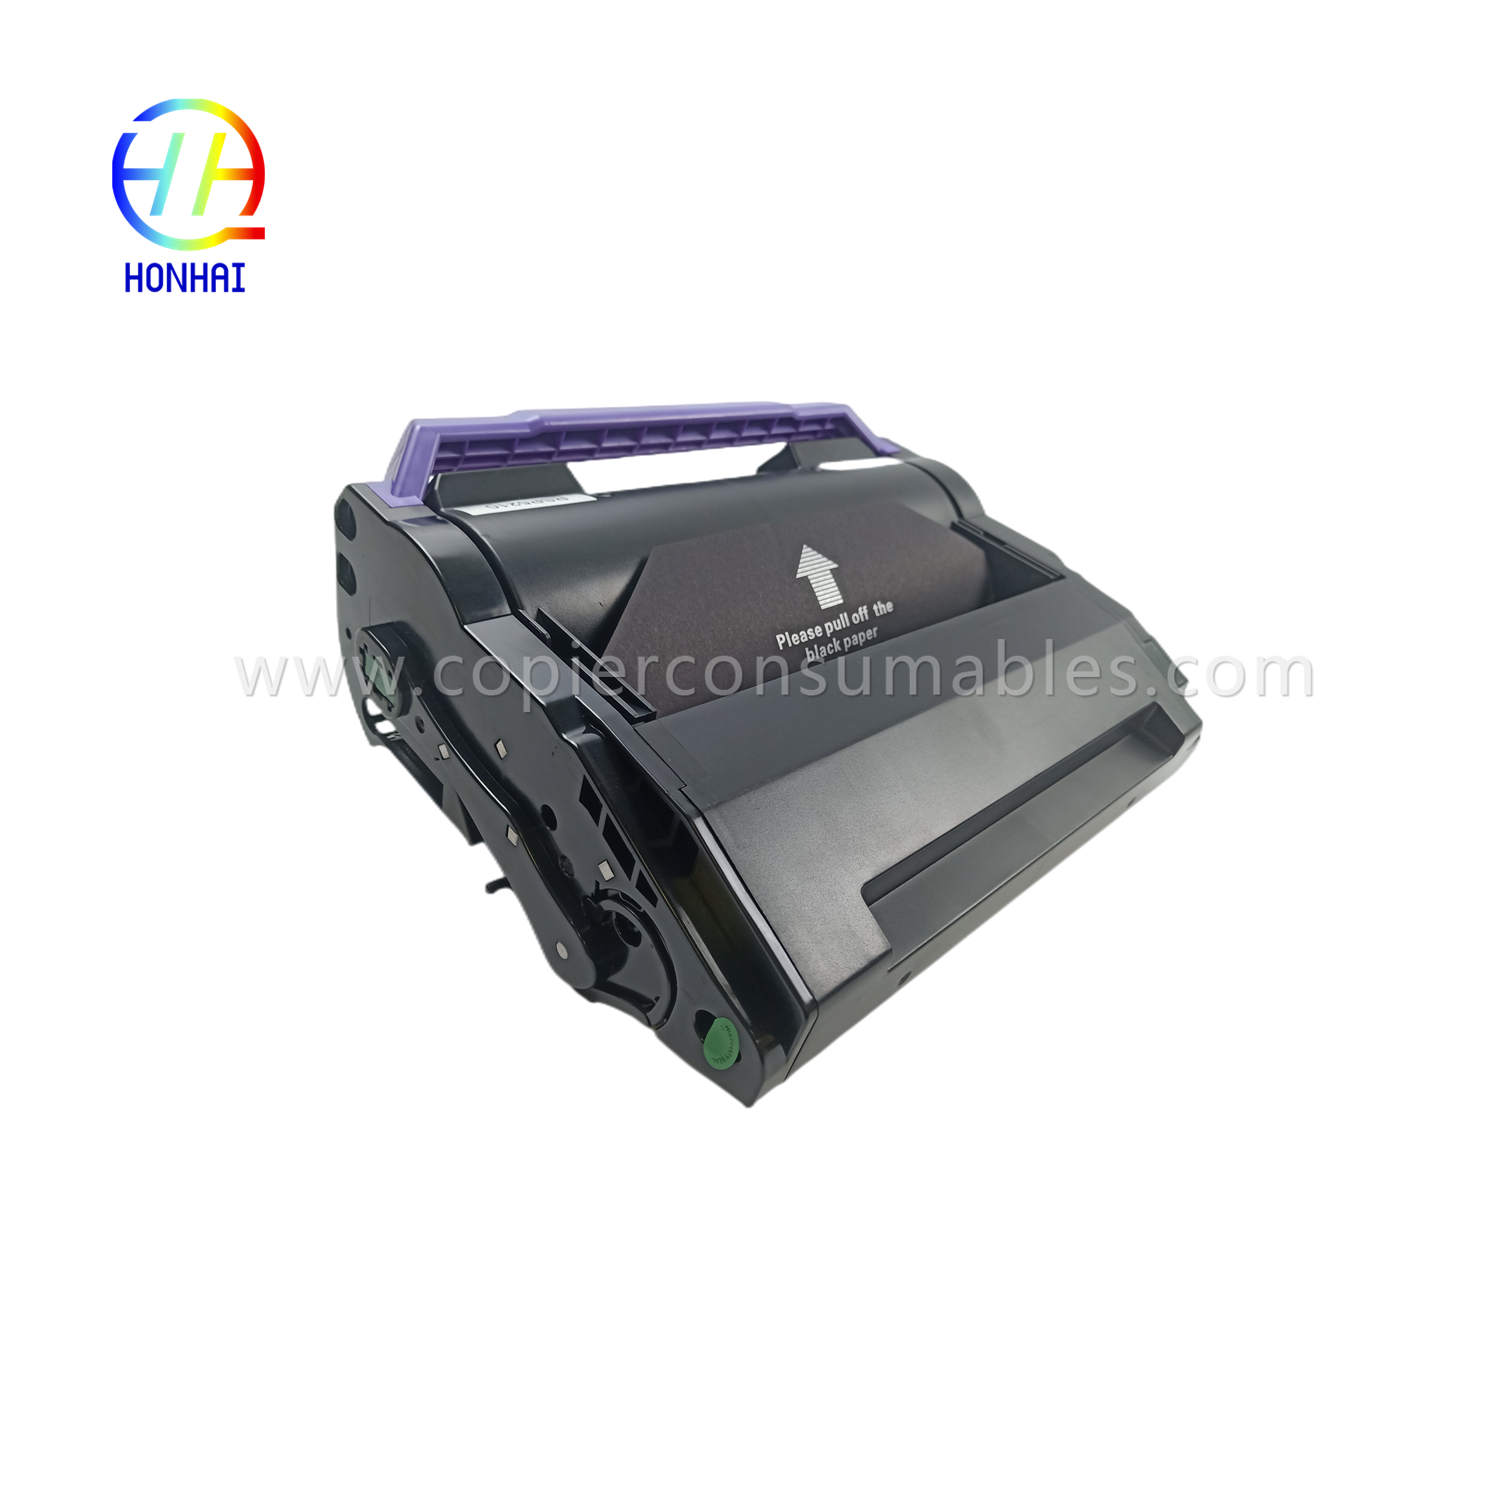 https://www.copierhonhaitech.com/toner-cartridge-black-for-ricoh-406683-sp-5200-5210-product/